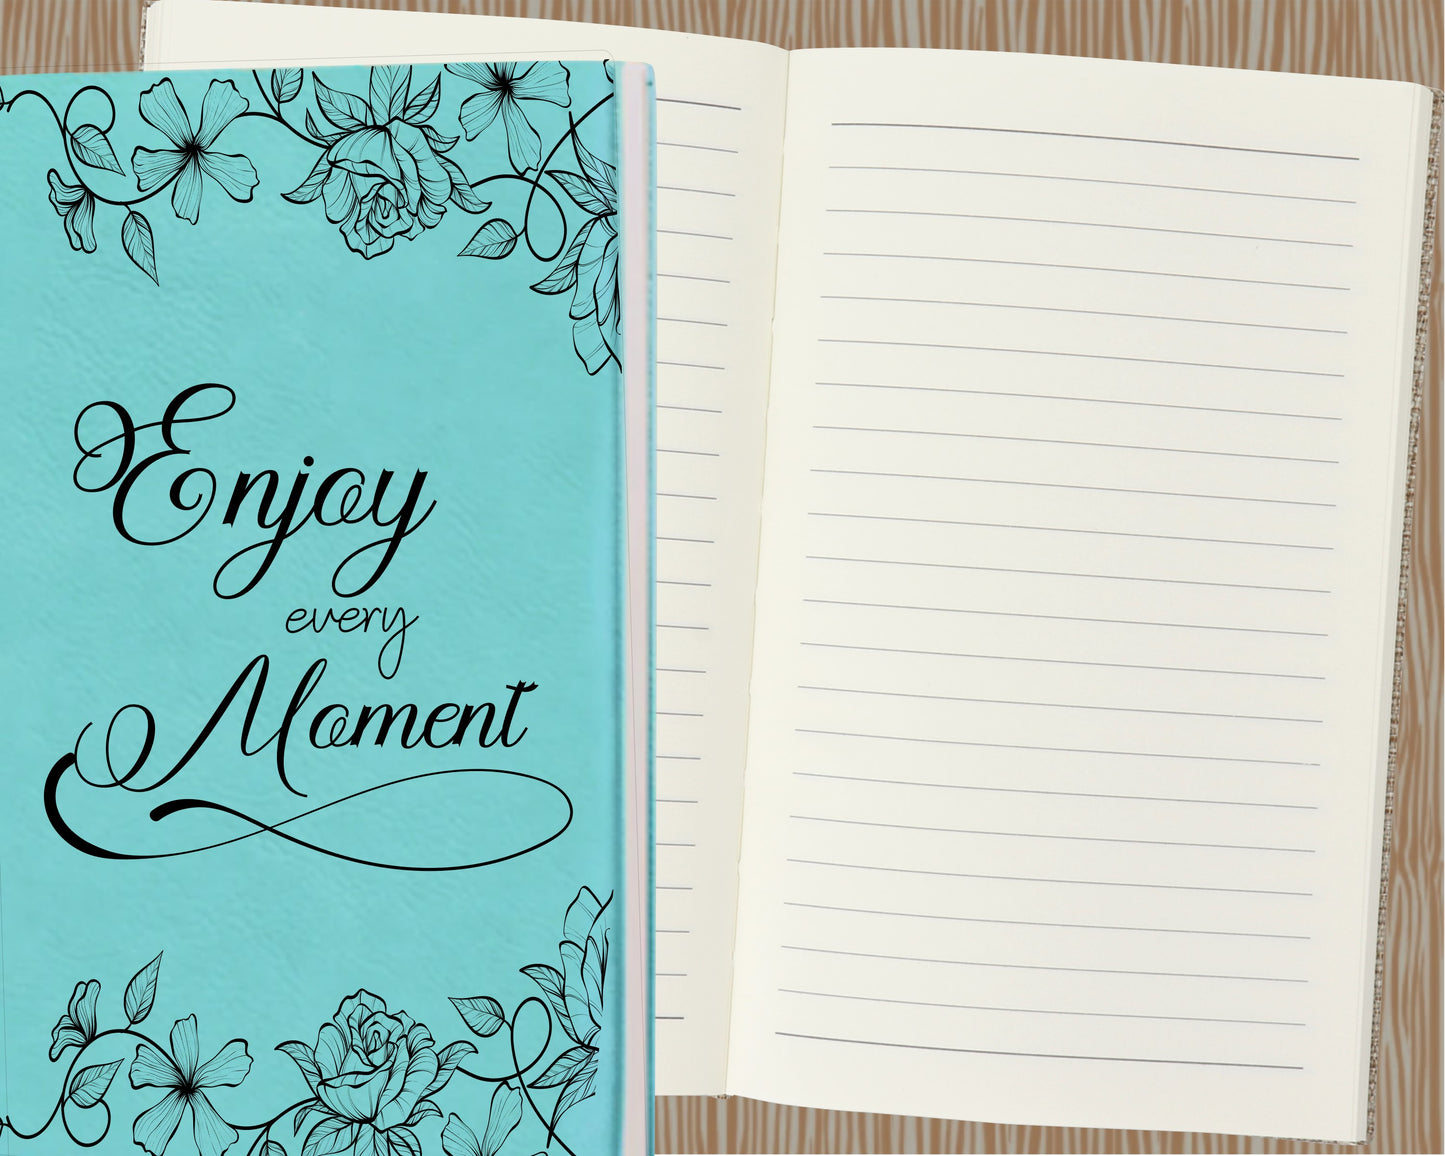 Enjoy Every Moment Journal, Inspirational Journal, Engraved Journal, Handmade Journal, Motivational Journal, Notebook, Prayer Journal, Diary